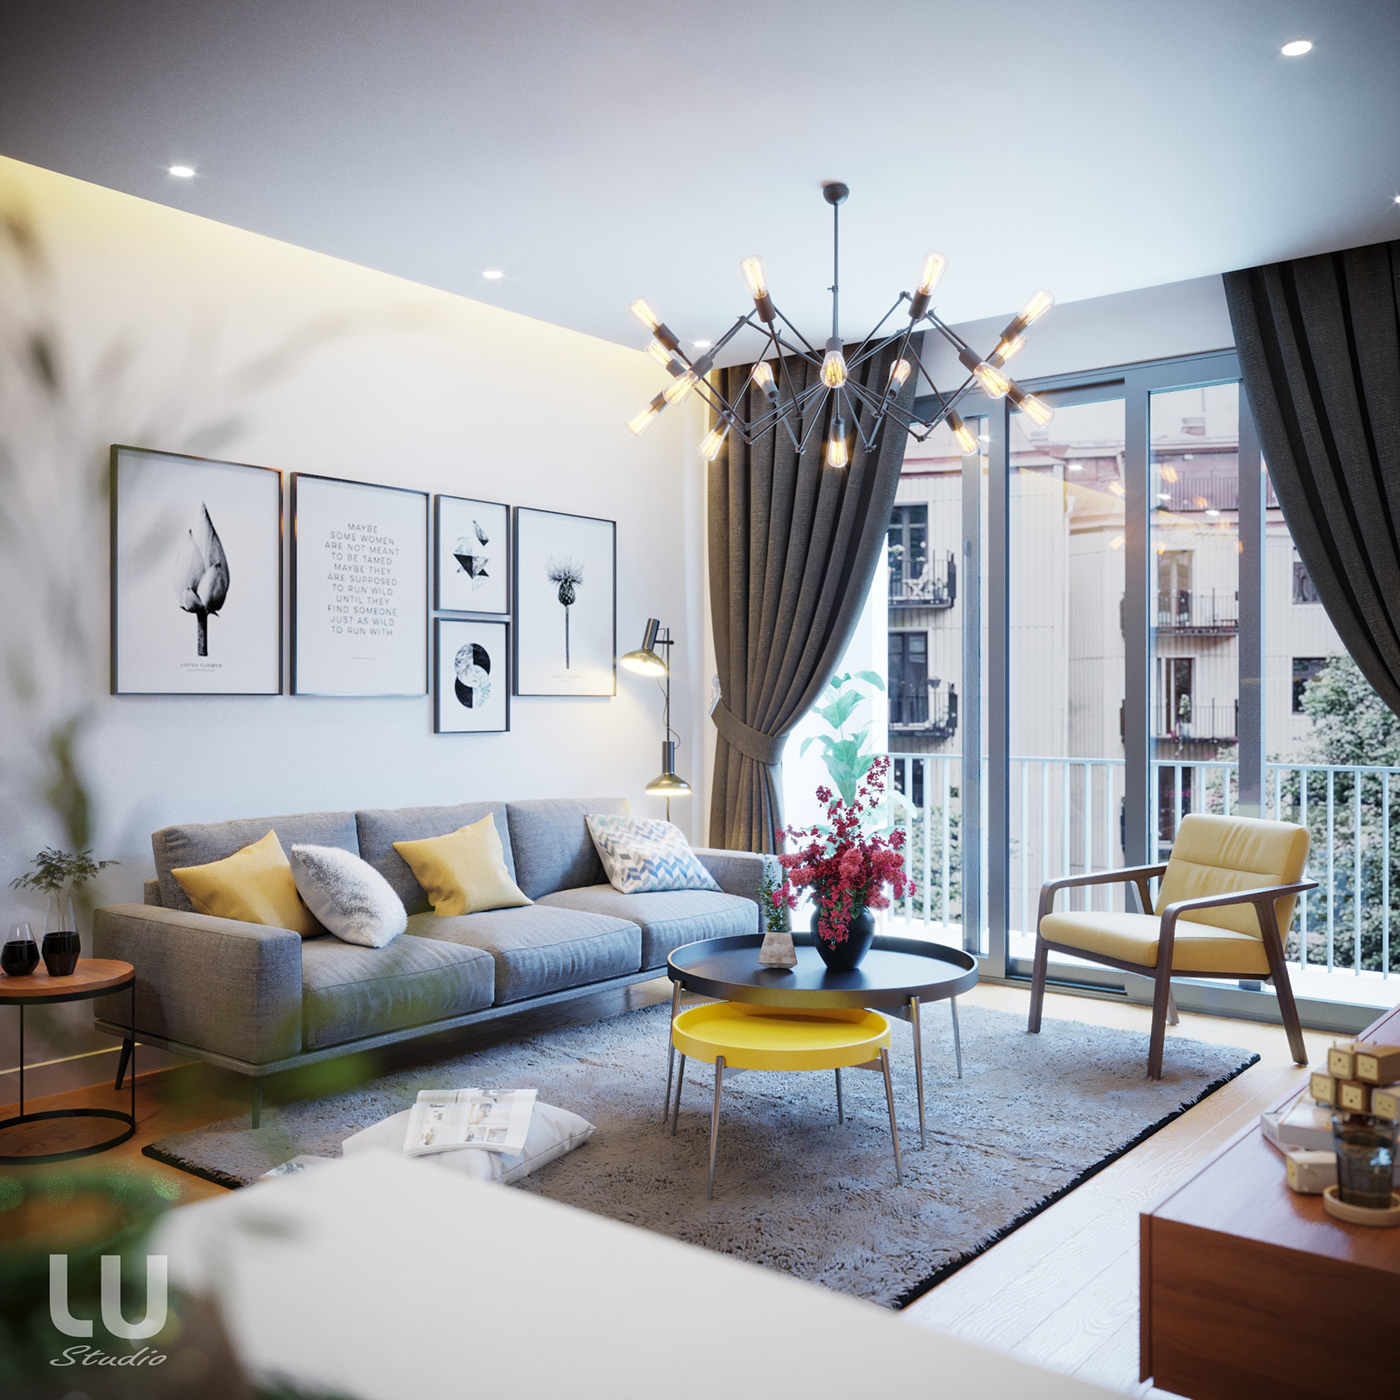 thiết kế nội thất chung cư tại Hà Nội Căn Hộ Season Avennue Phong Cách Hiện Đại - HN 1 1533263013